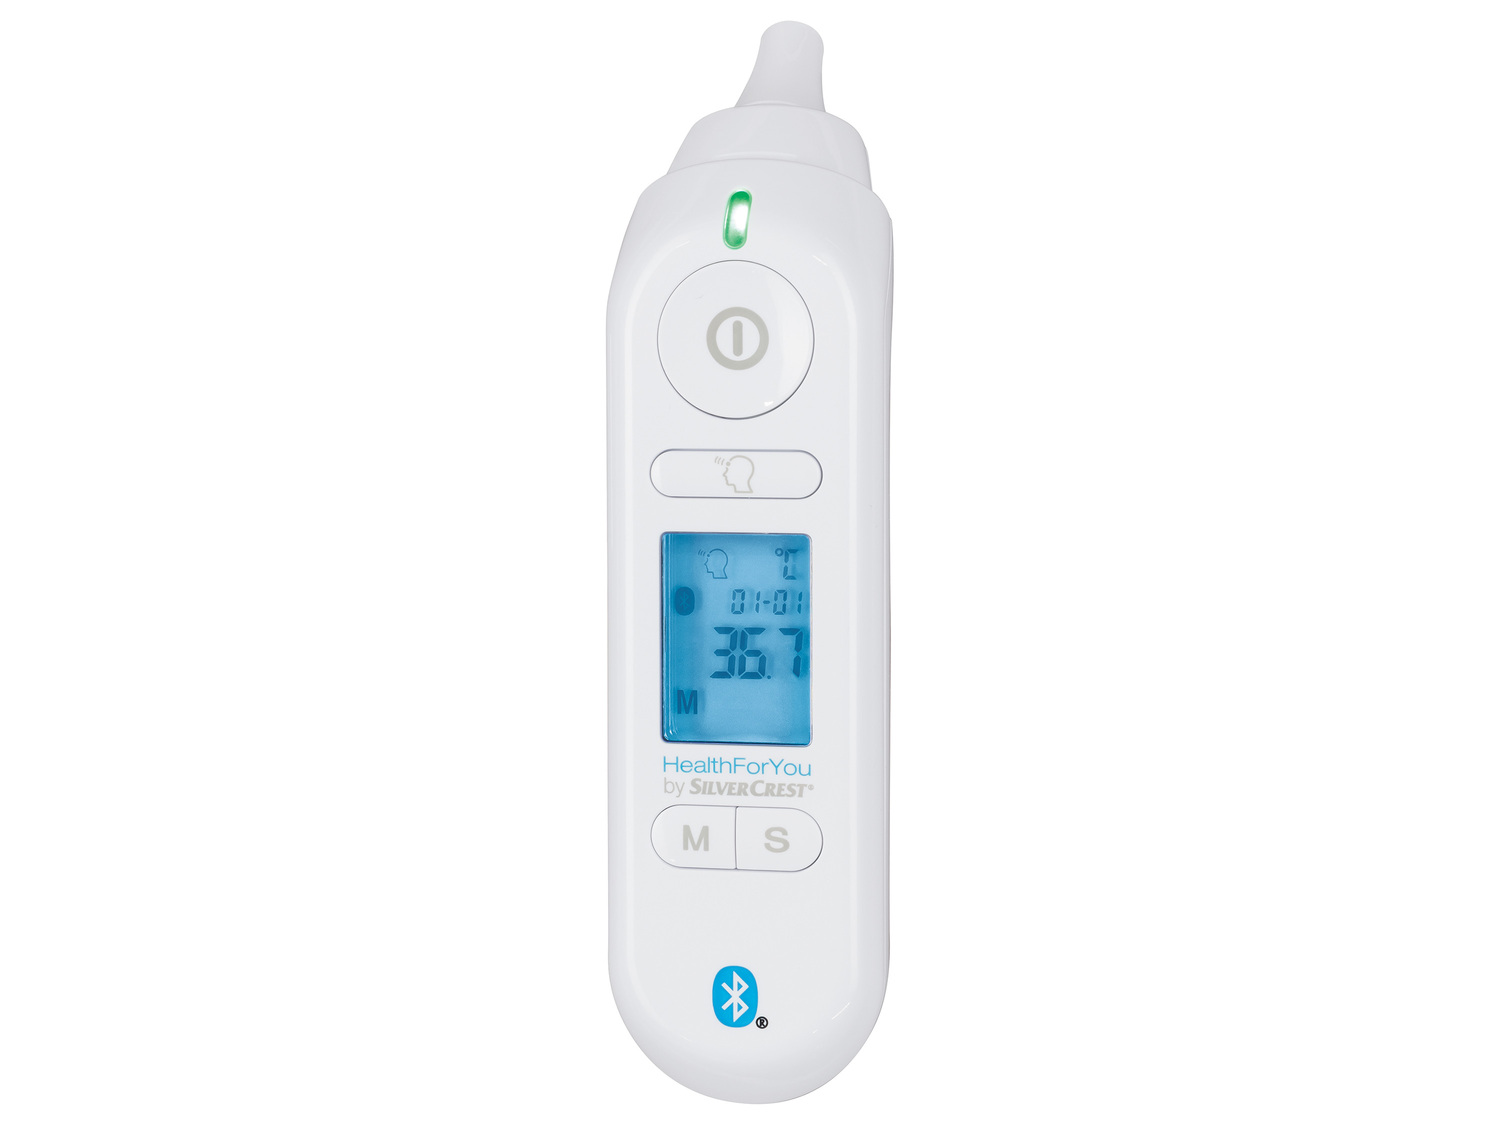 Thermomètre multifonction HealthForYou, Silvercrest , le prix 17.99 € 
- Peut ...